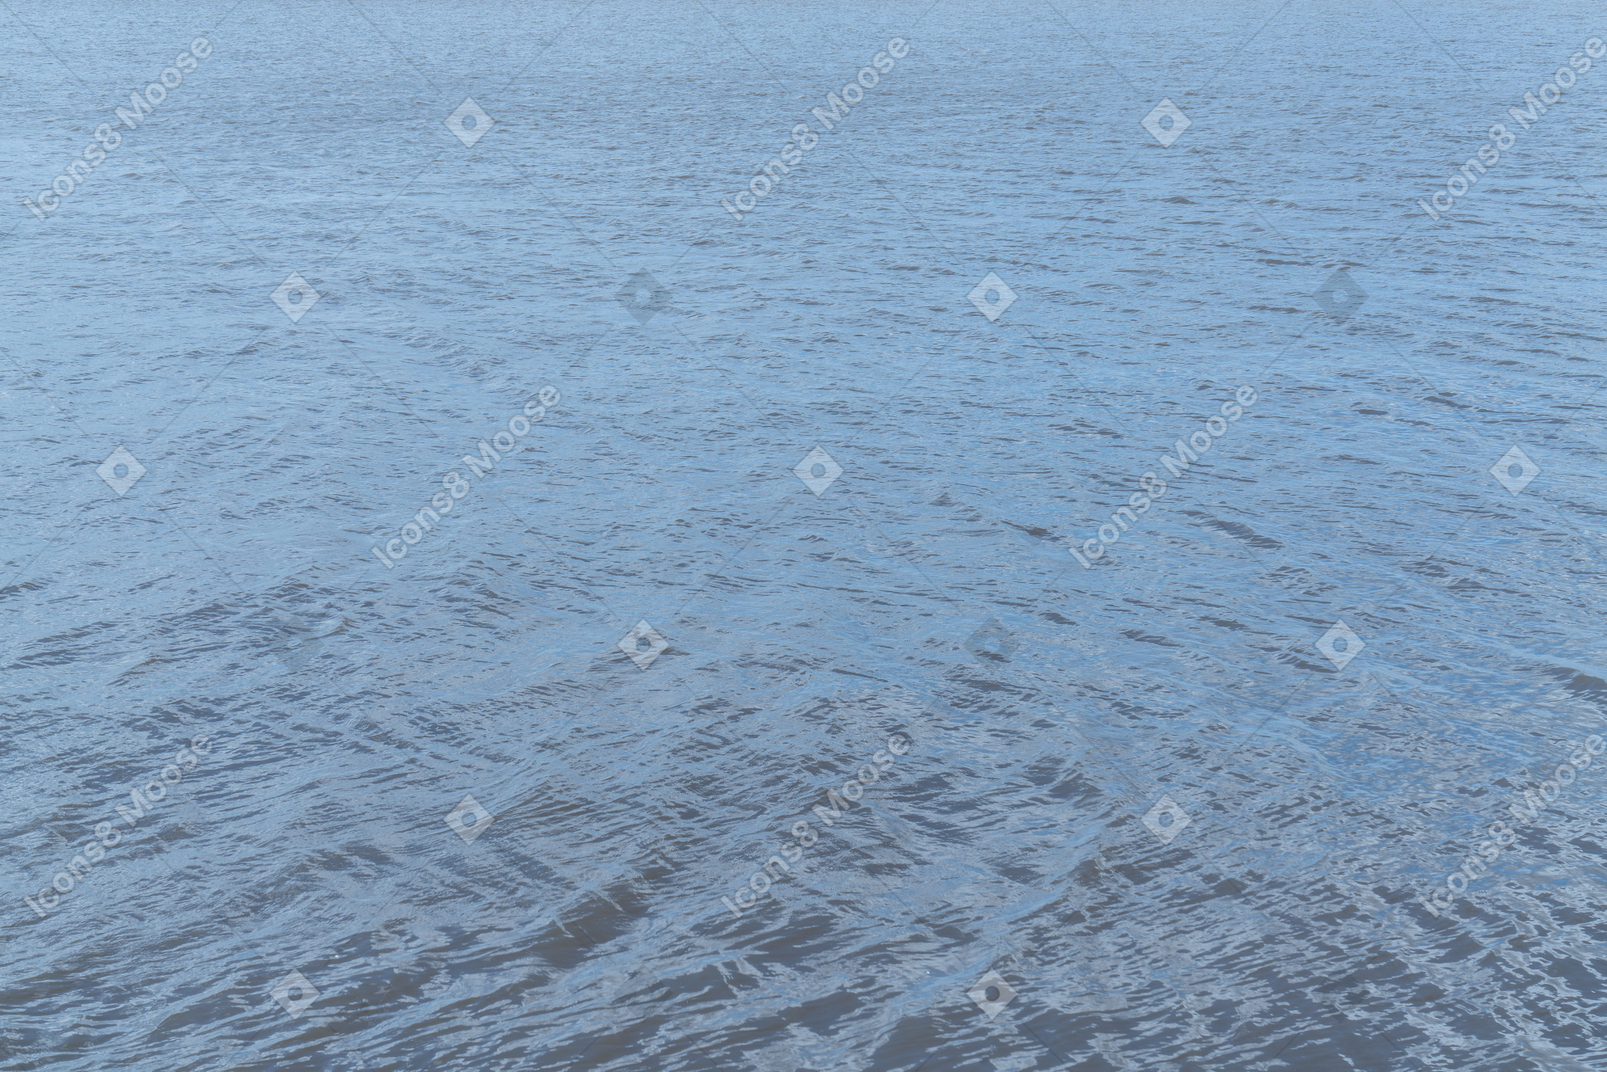 Wellen auf der wasseroberfläche